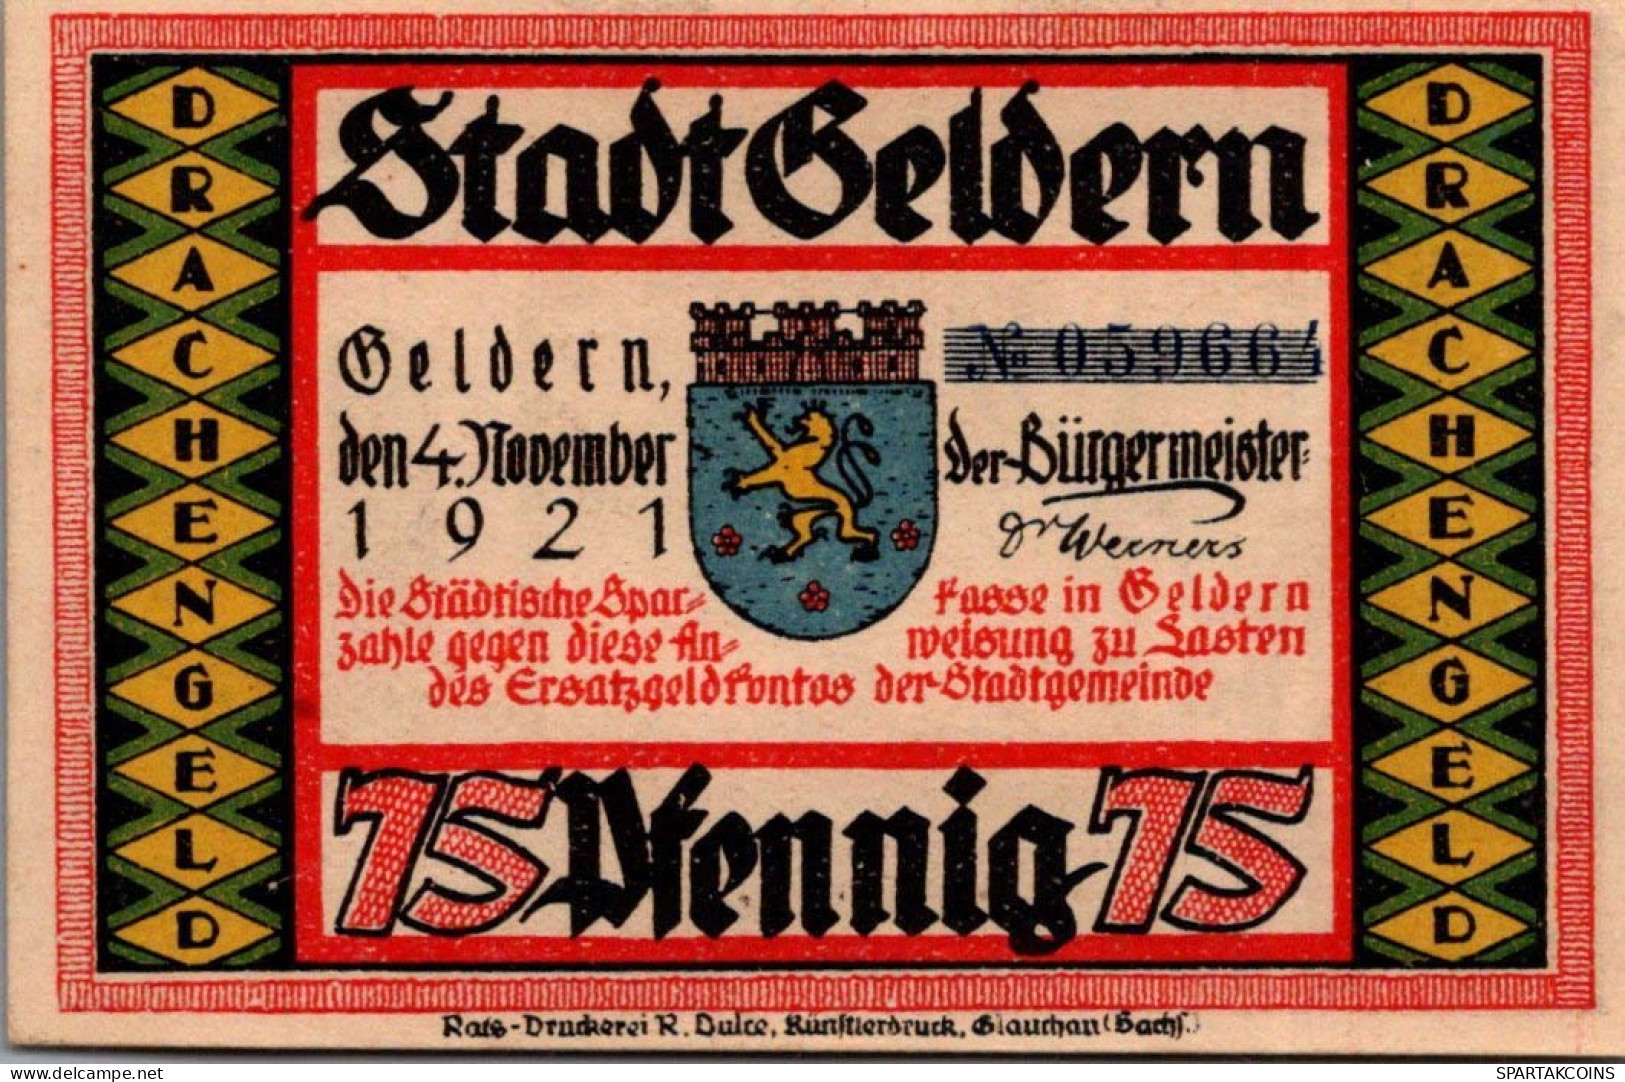 75 PFENNIG 1921 Stadt GELDERN Rhine DEUTSCHLAND Notgeld Banknote #PF686 - [11] Local Banknote Issues